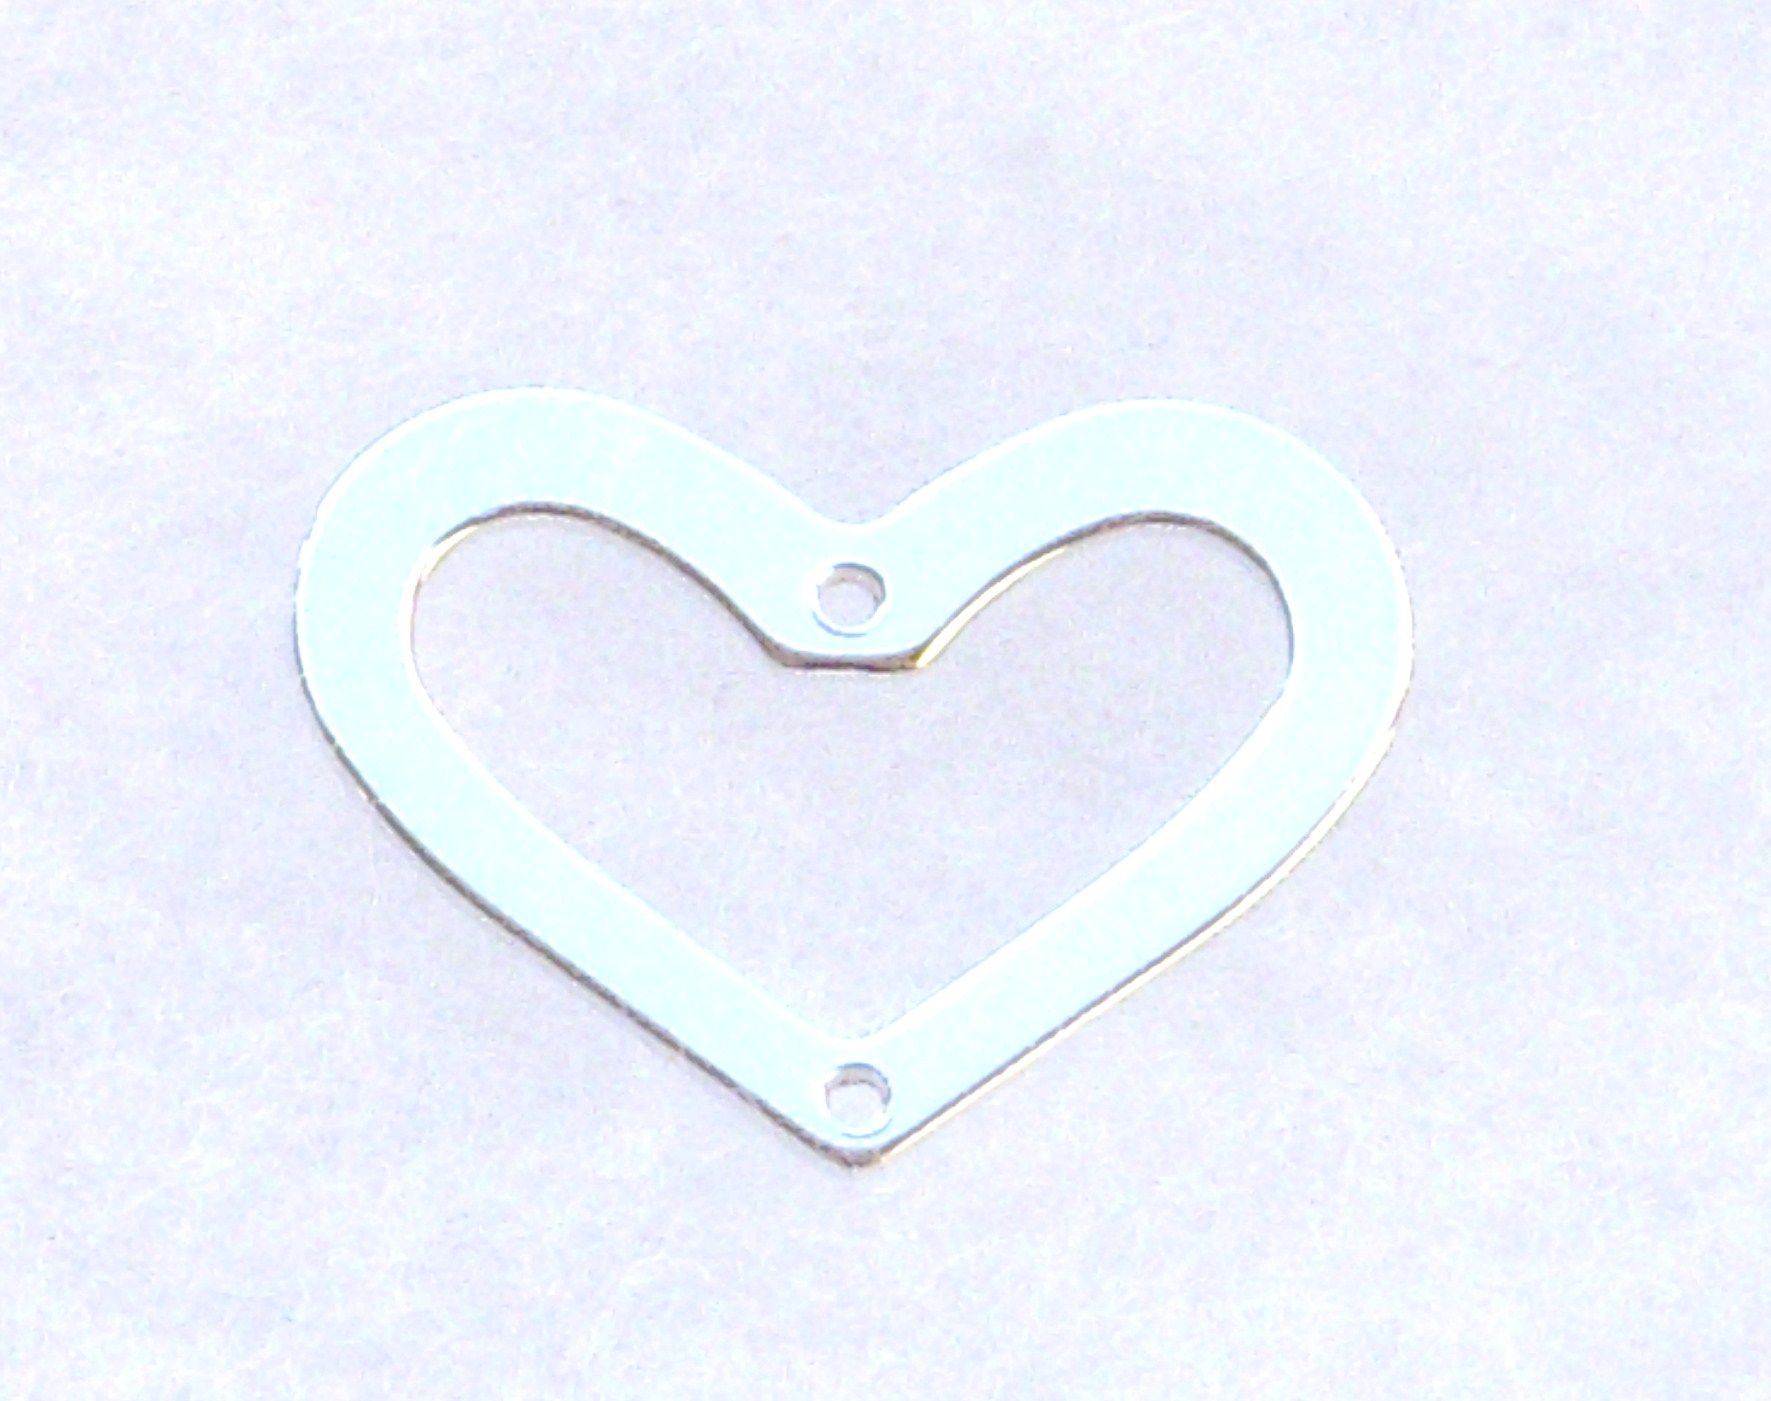 Sterling Silver Heart Shape Link w 2 Holes 15x20mm